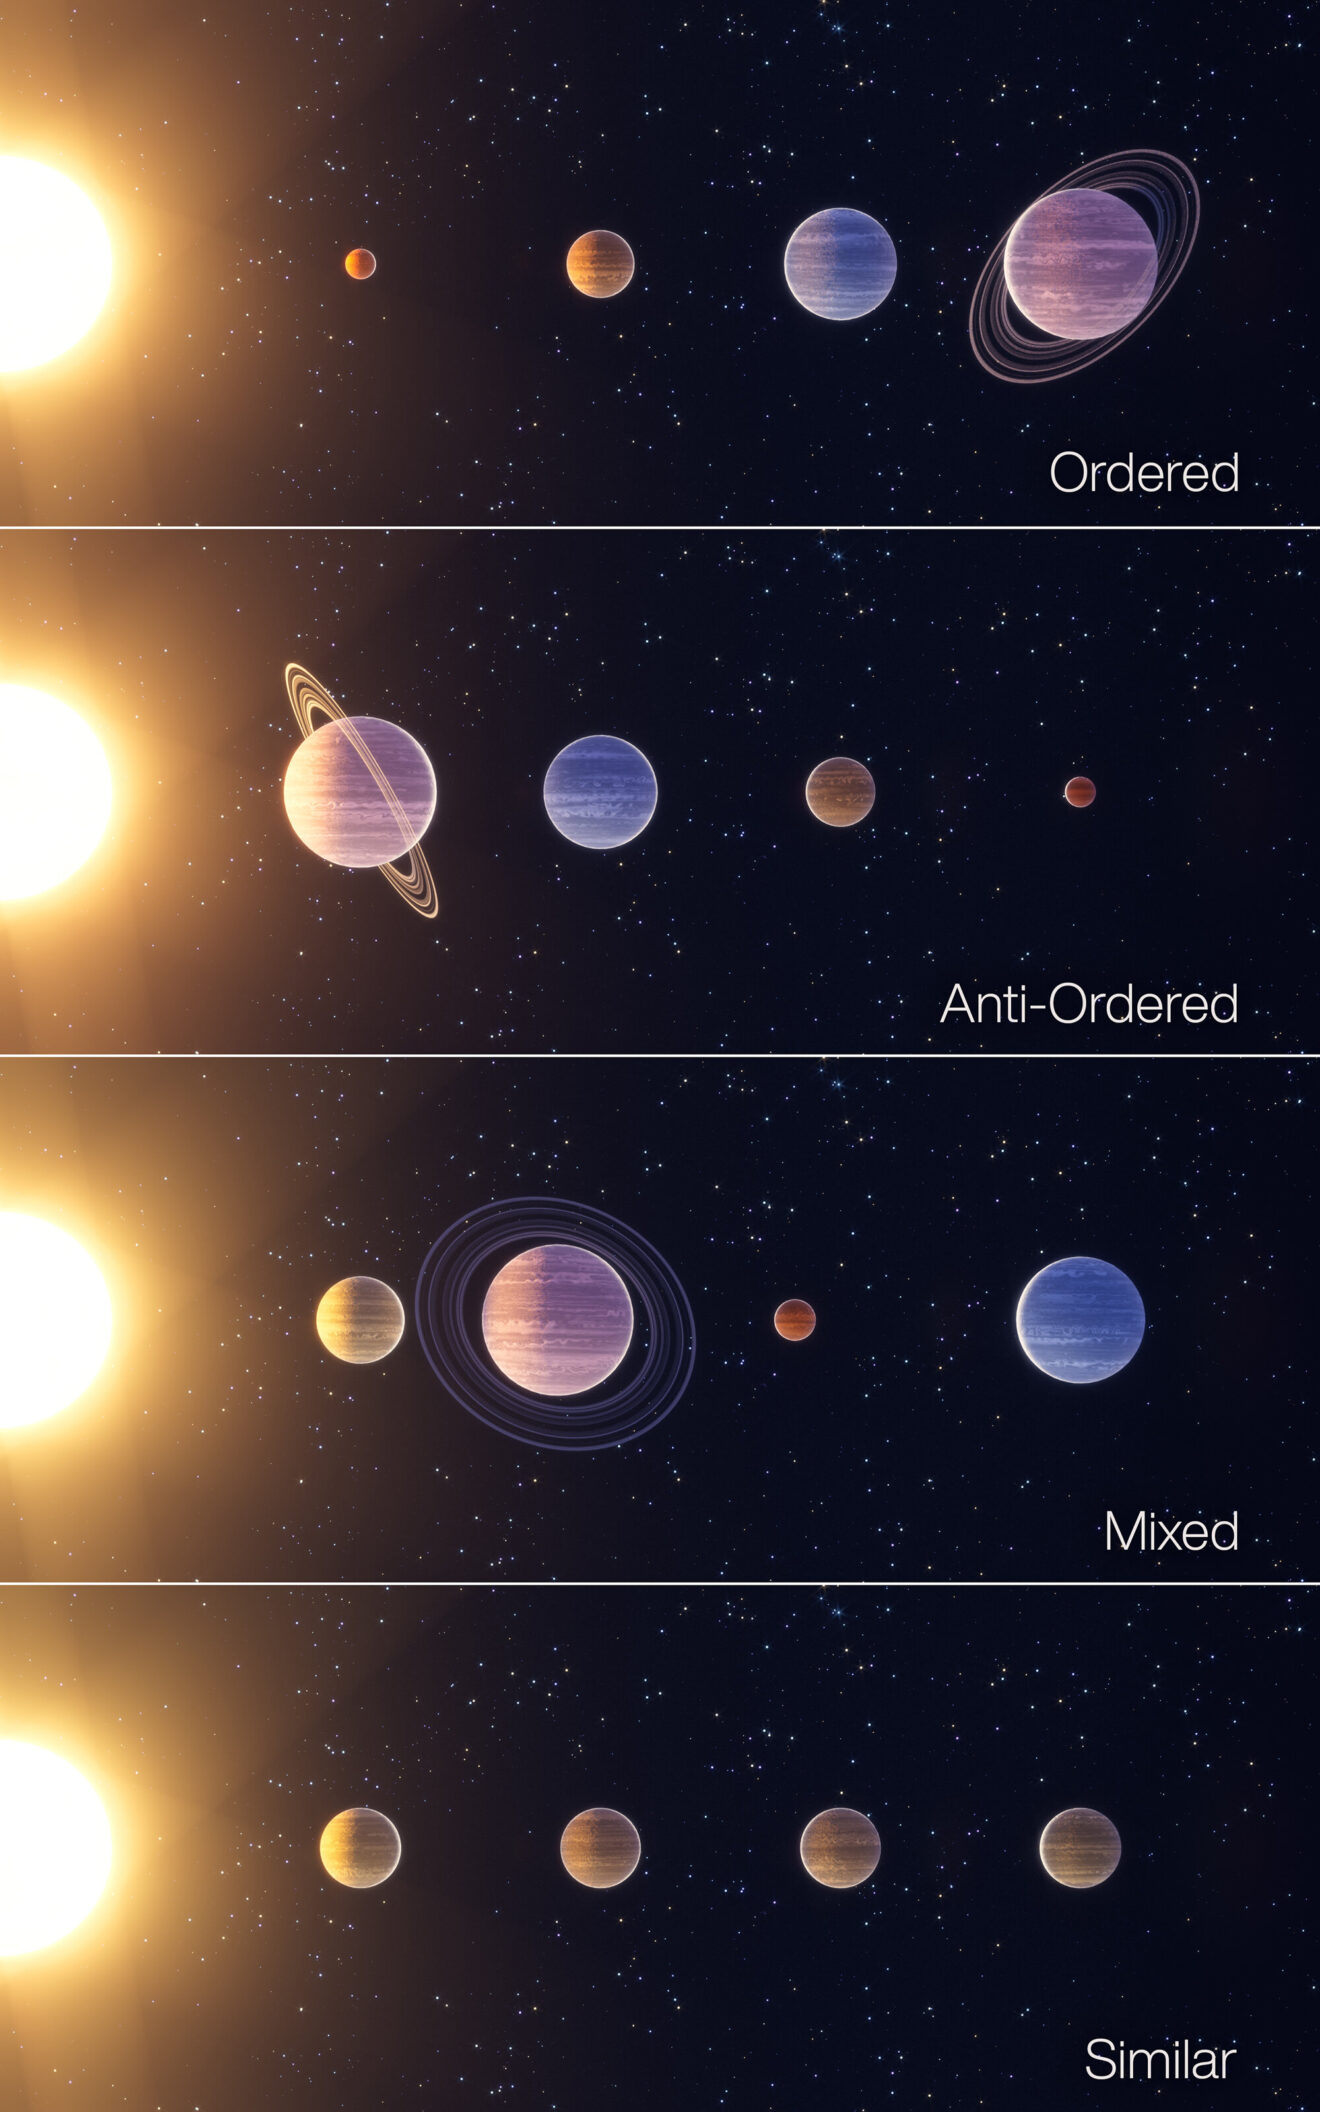 Nieuwe ordening met vier 'klassen' van planetaire systemen: het zonnestelsel blijkt zeldzaam te zijn